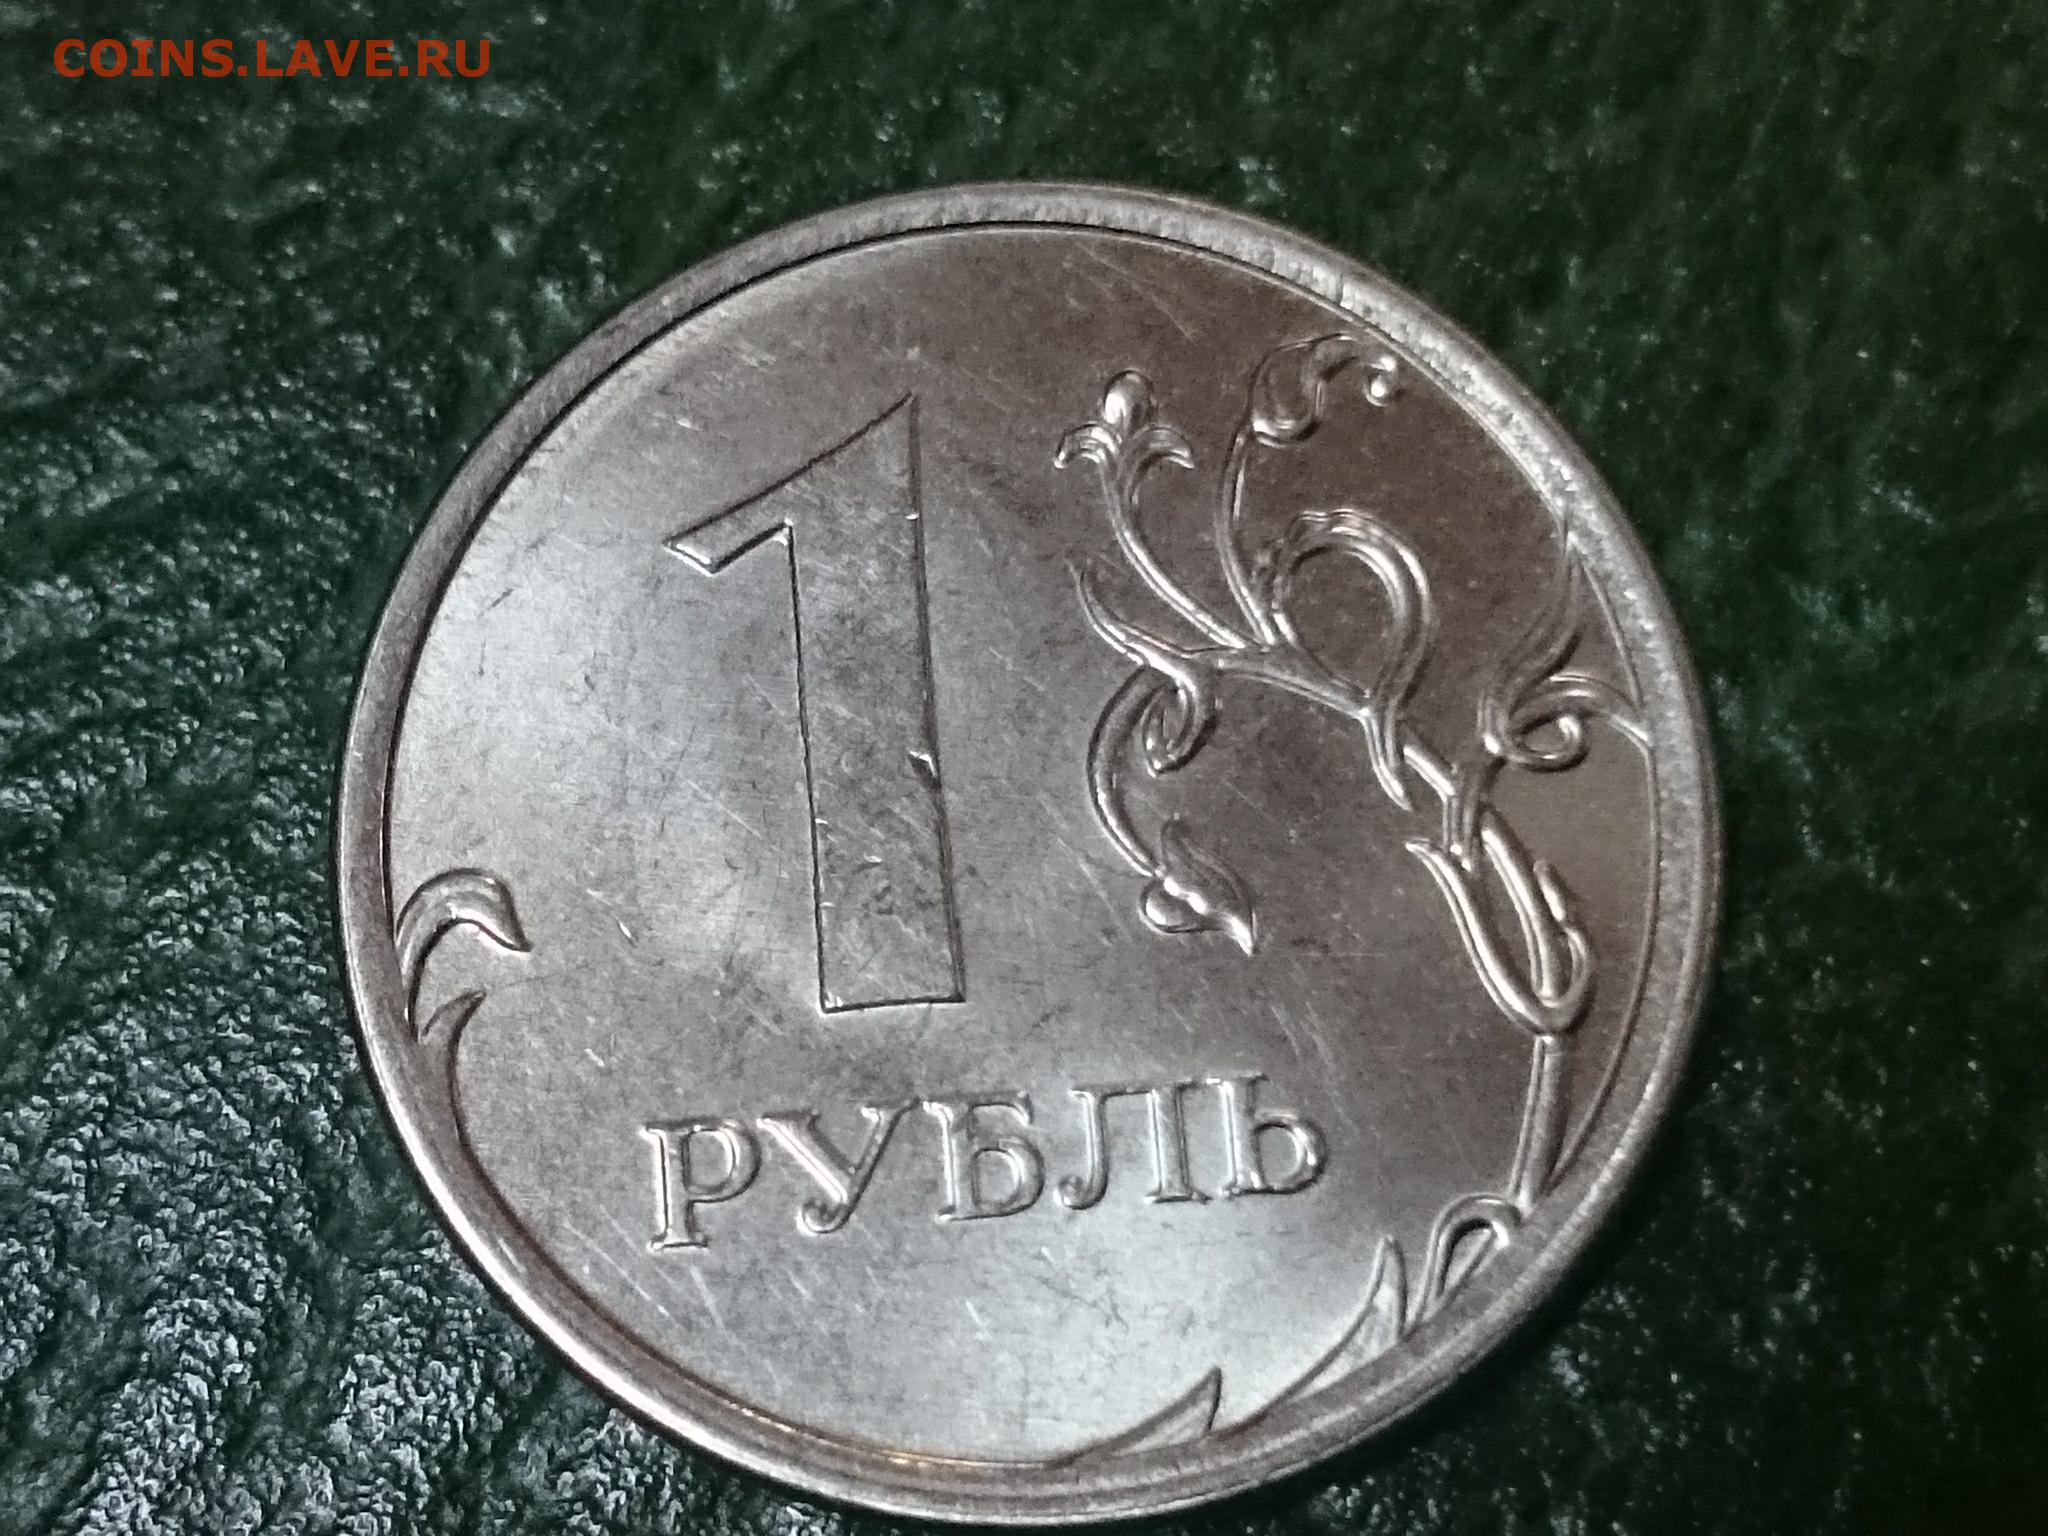 1 руб 2015 года. Ценник 1 рубль.